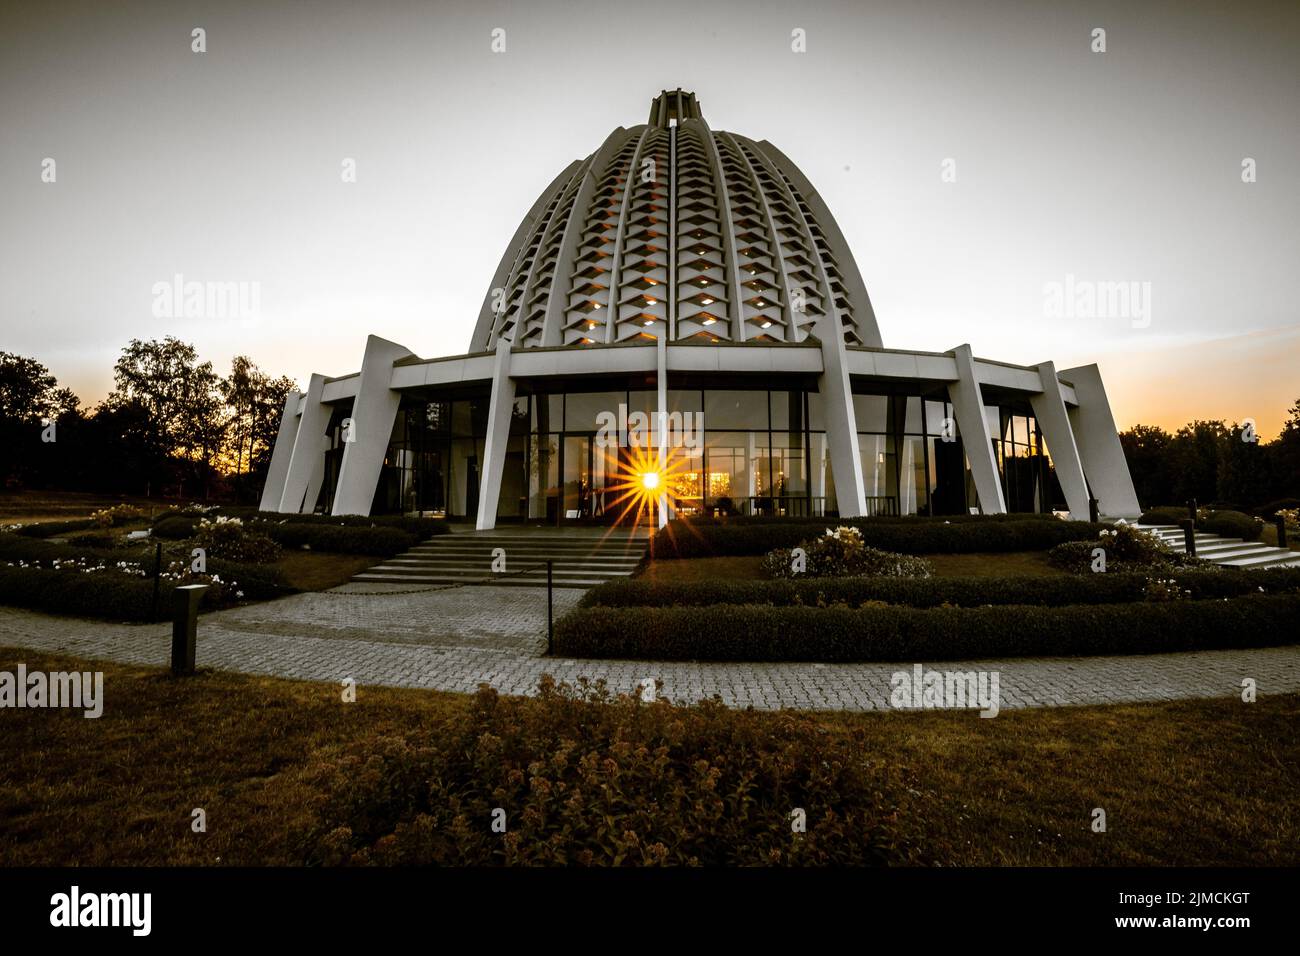 Templo Bahai, única casa de culto y centro religioso de la religión Bahai en Europa, Hofheim-Lorsbach, Taunus, Hesse, Alemania Foto de stock